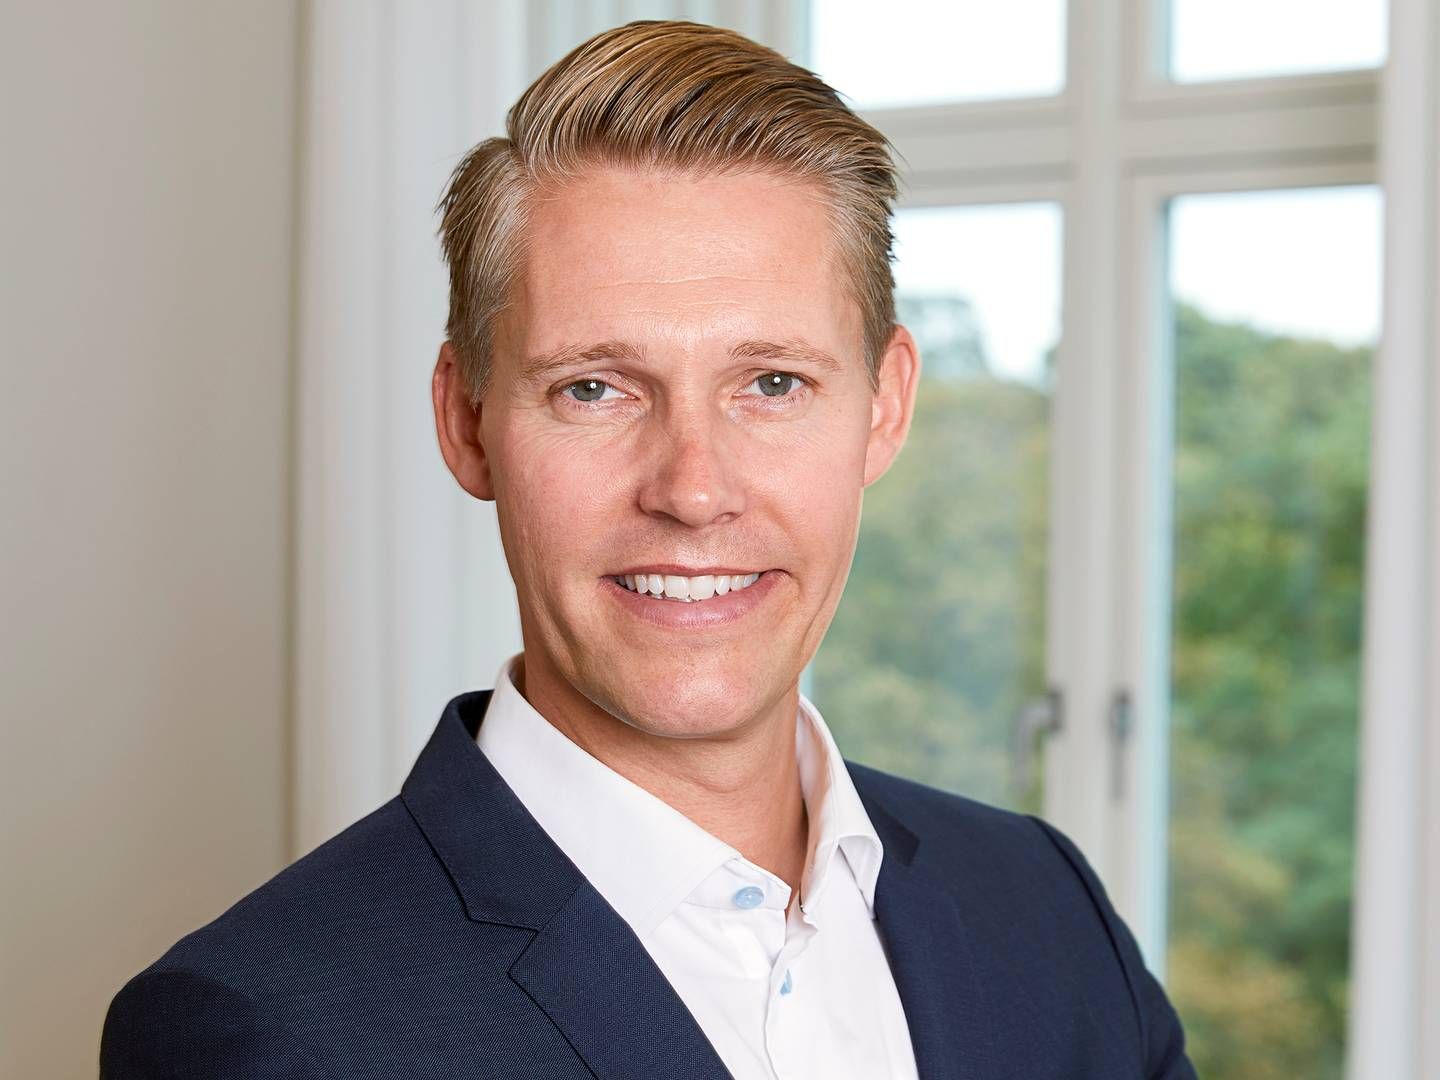 Som nyansat kommunikationschef i Industriens Pension blev Morten Westergaard Sommerfeldt konfronteret med en kritisk historie om selskabets investeringer i atomvåben. | Foto: Industriens Pension / PR